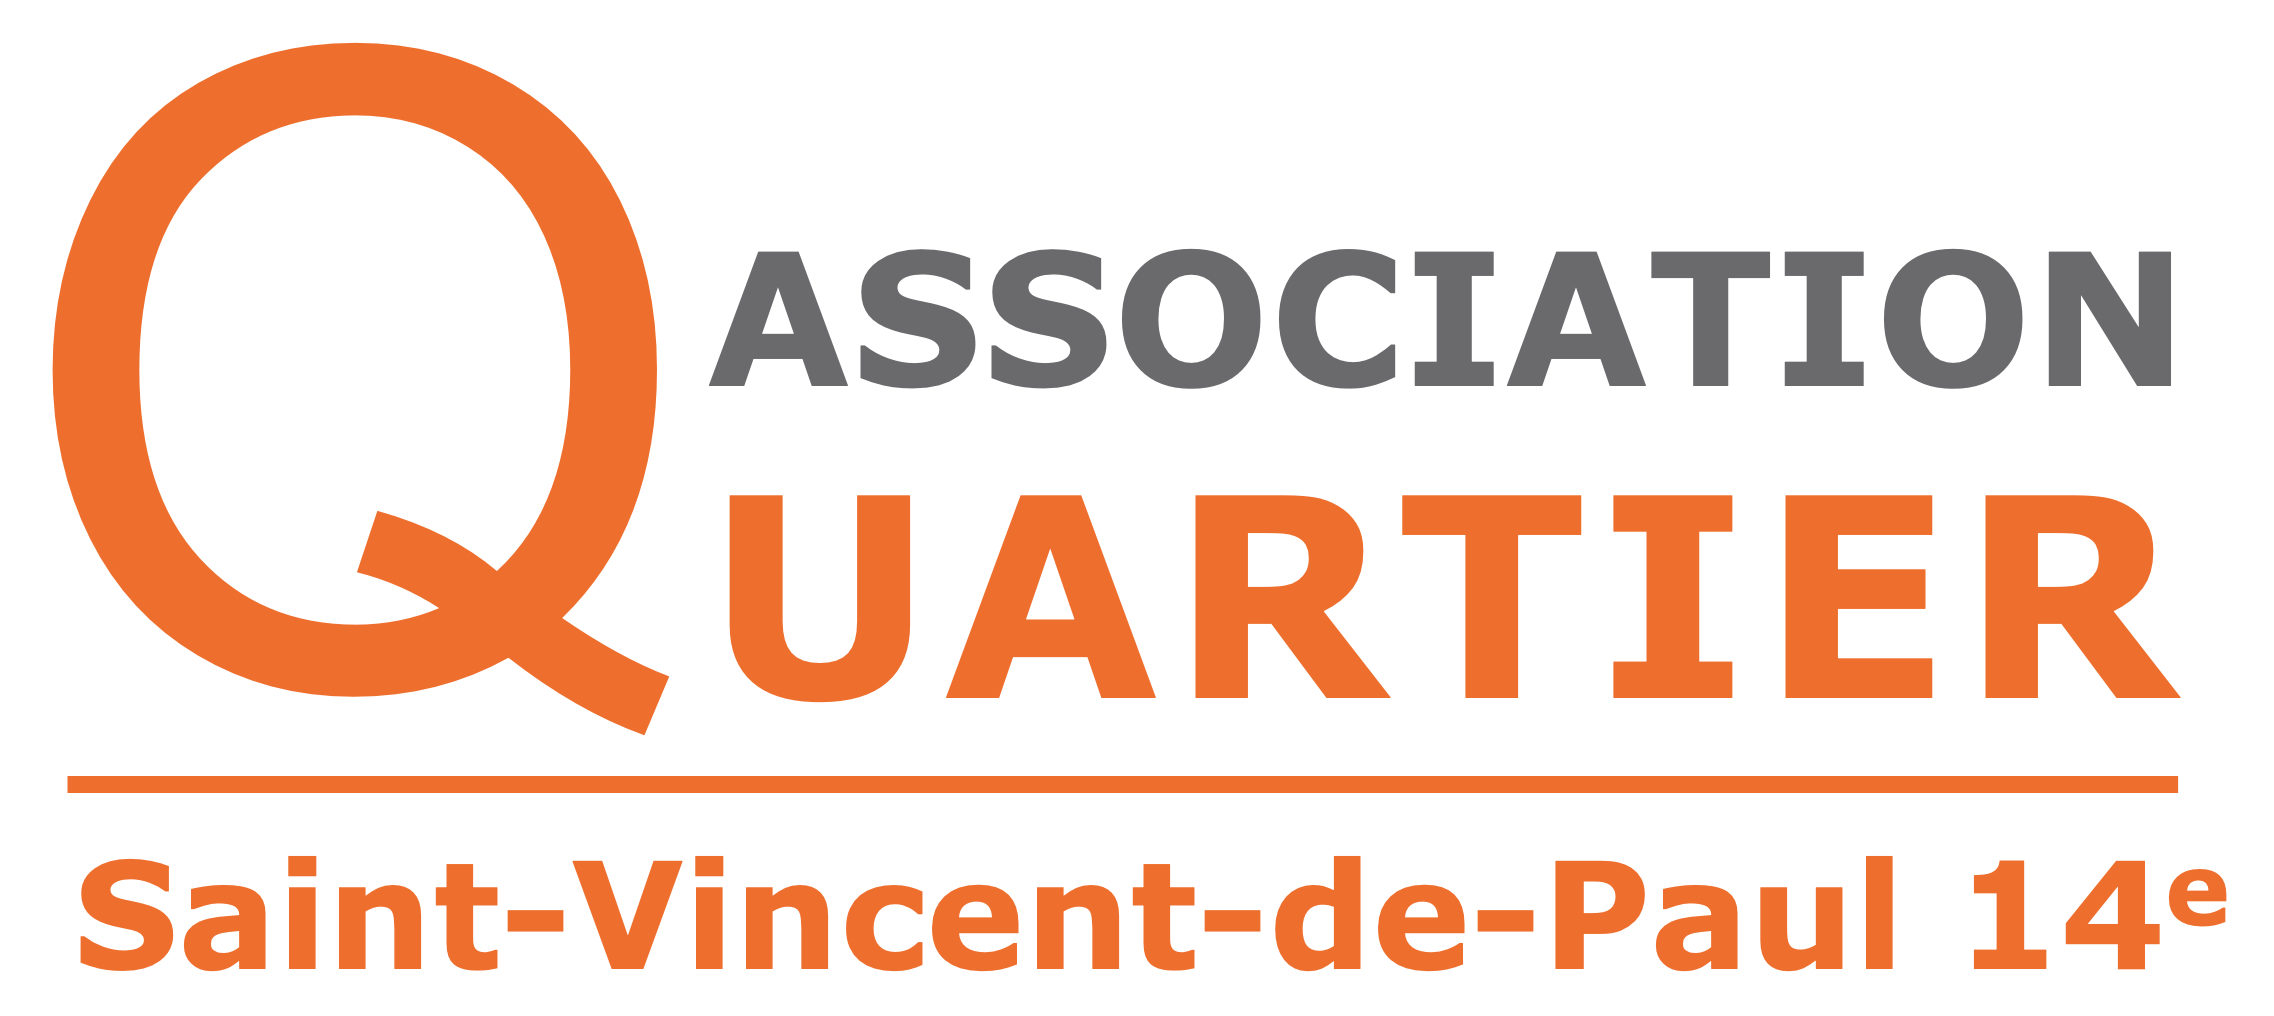 Association Quartier Saint-Vincent-de-Paul